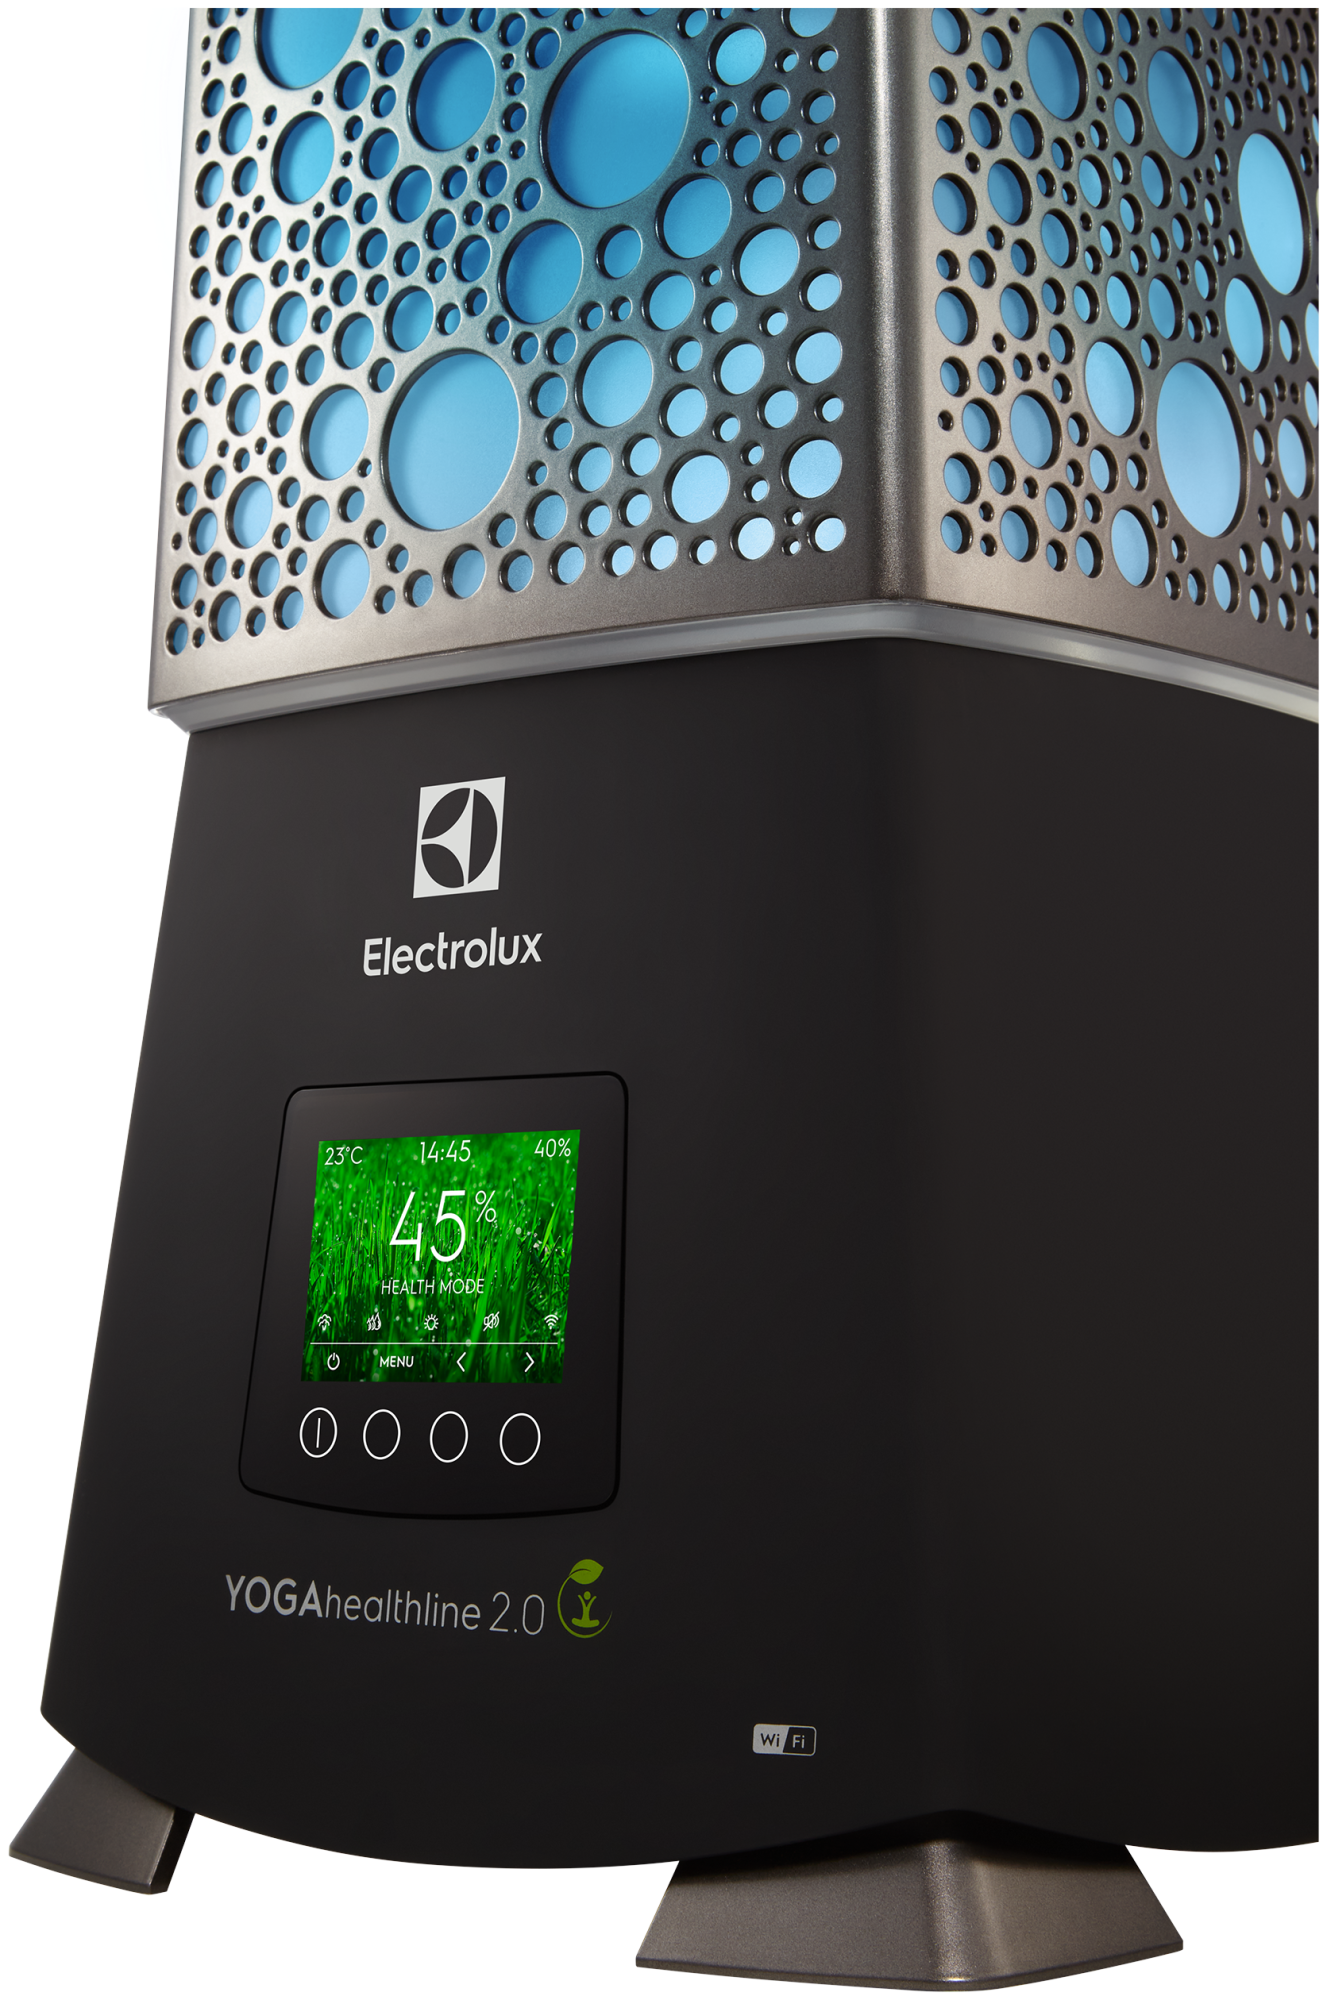 увлажнитель воздуха electrolux ecobiocomplex ehu-3910d yogahealthline 2.0